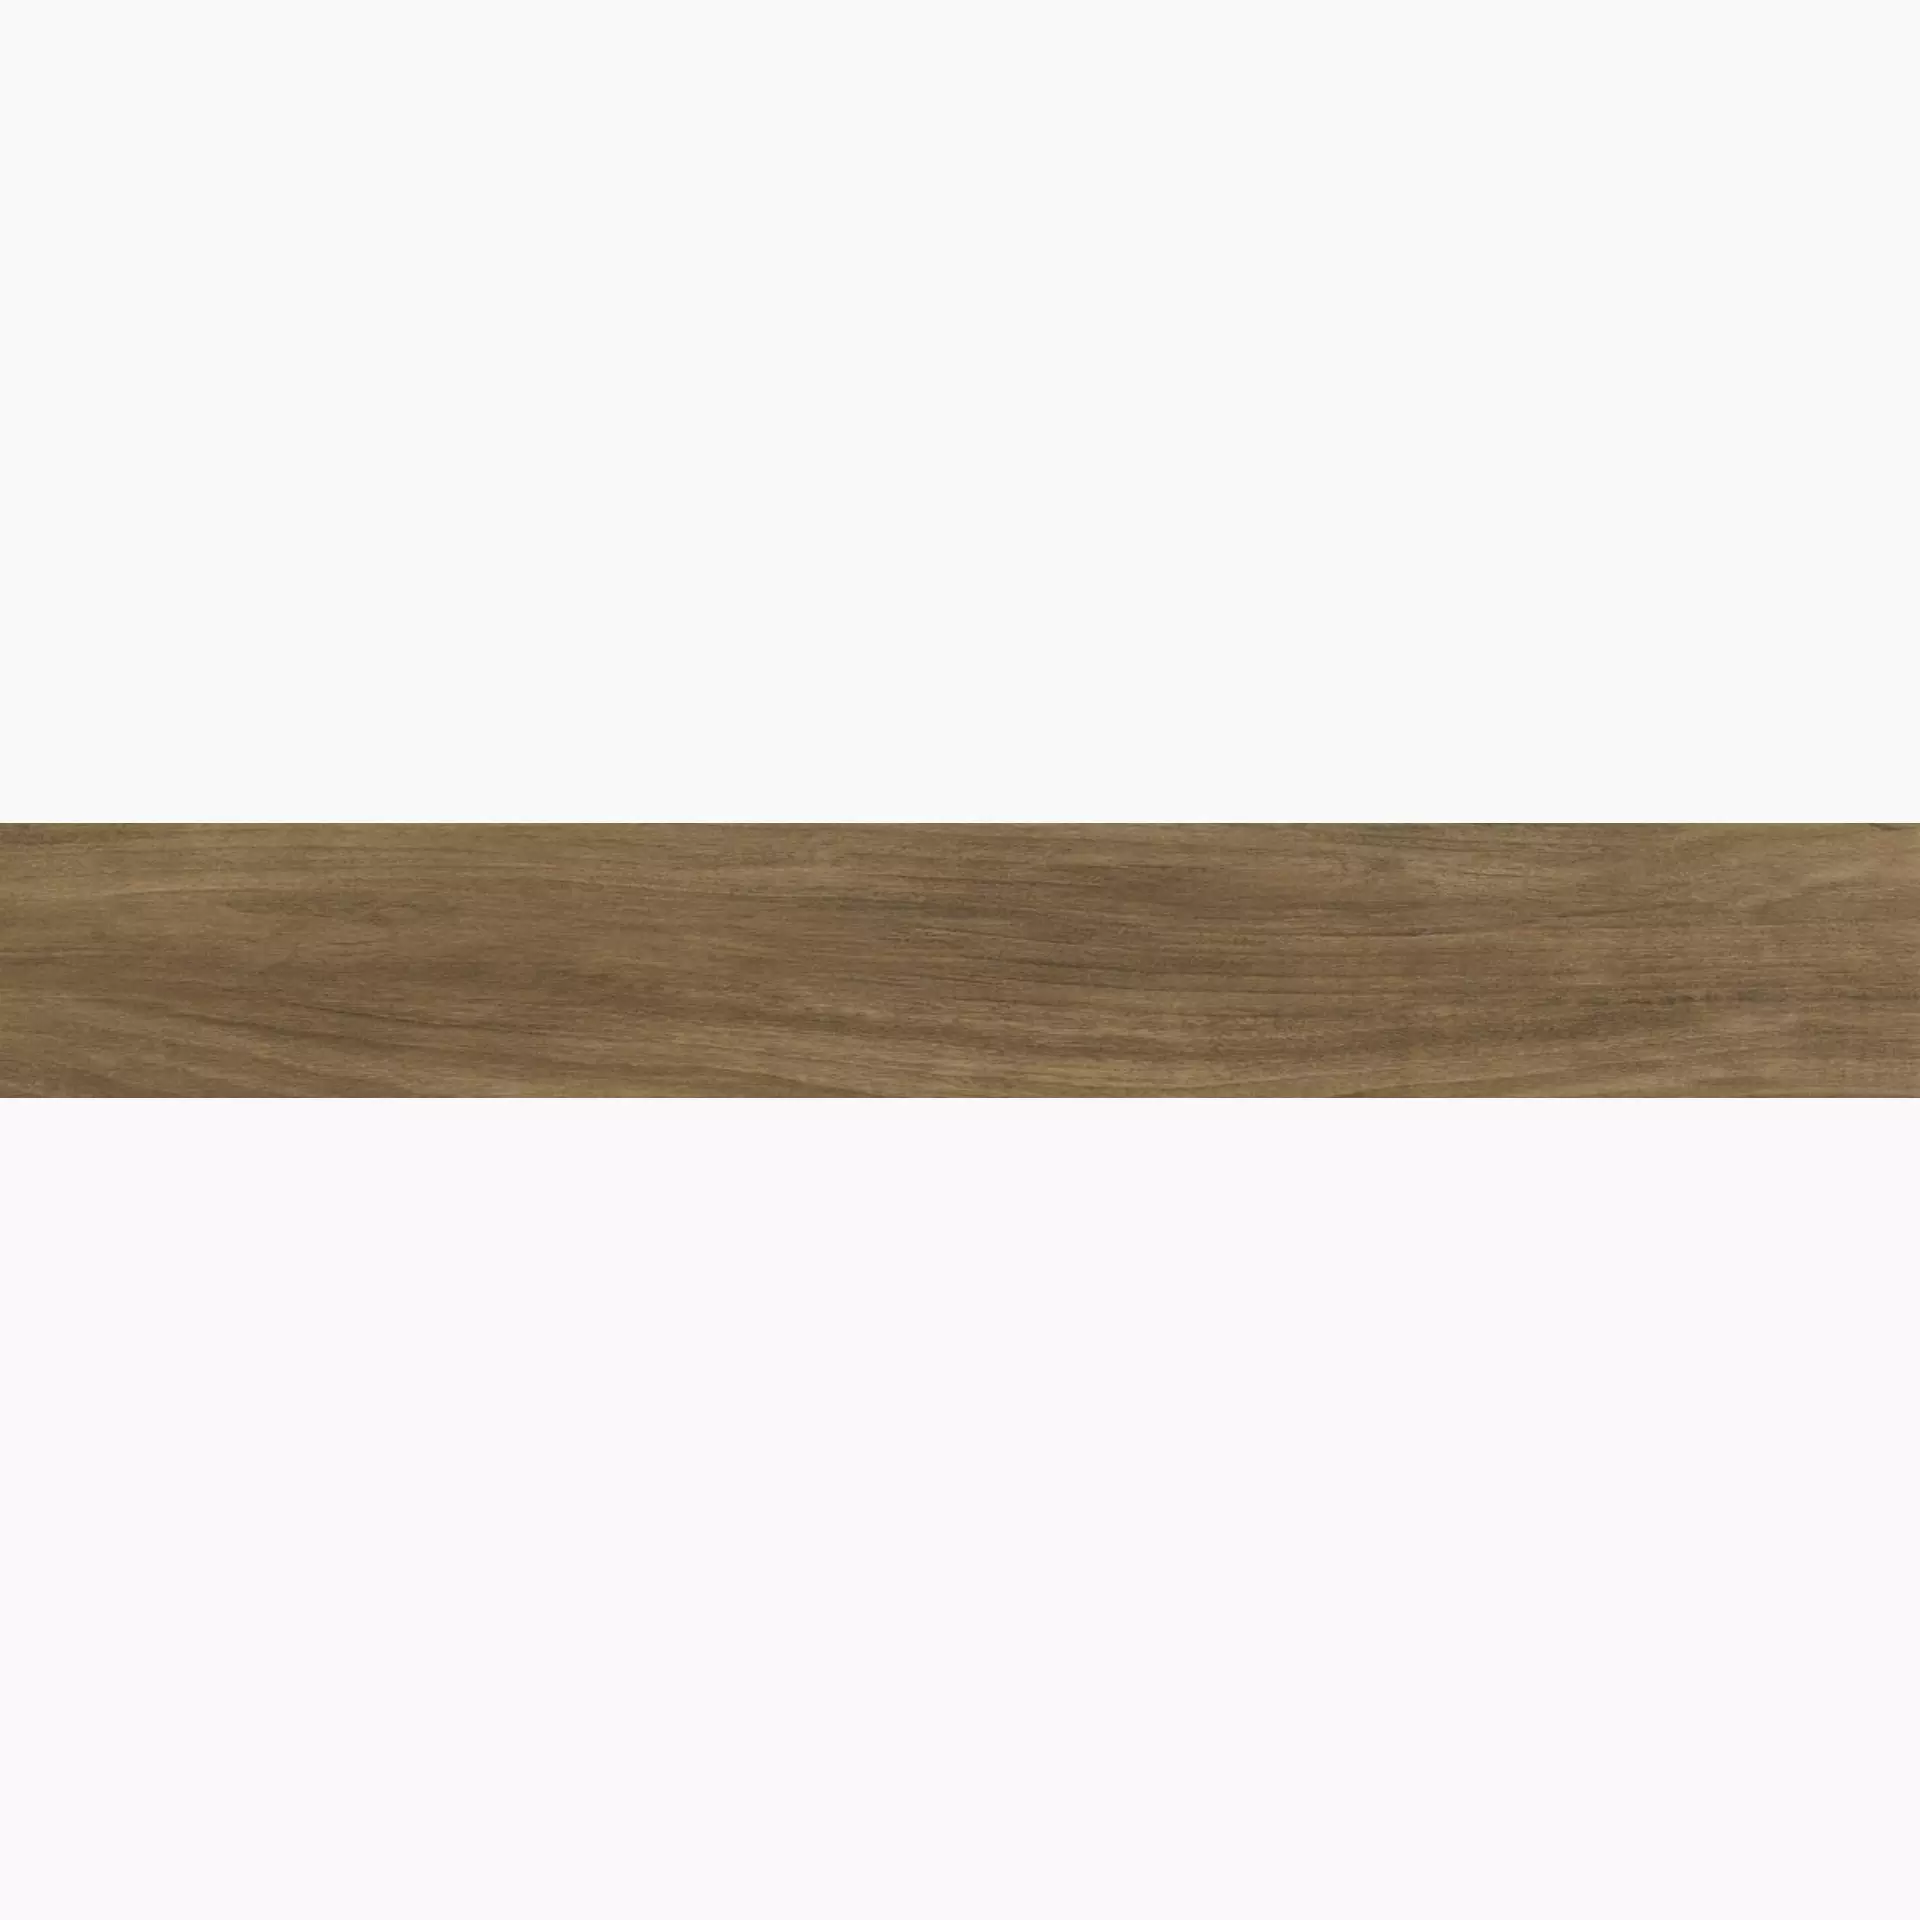 Ragno Woodessence Walnut Naturale – Matt R4MG 10x70cm 8mm